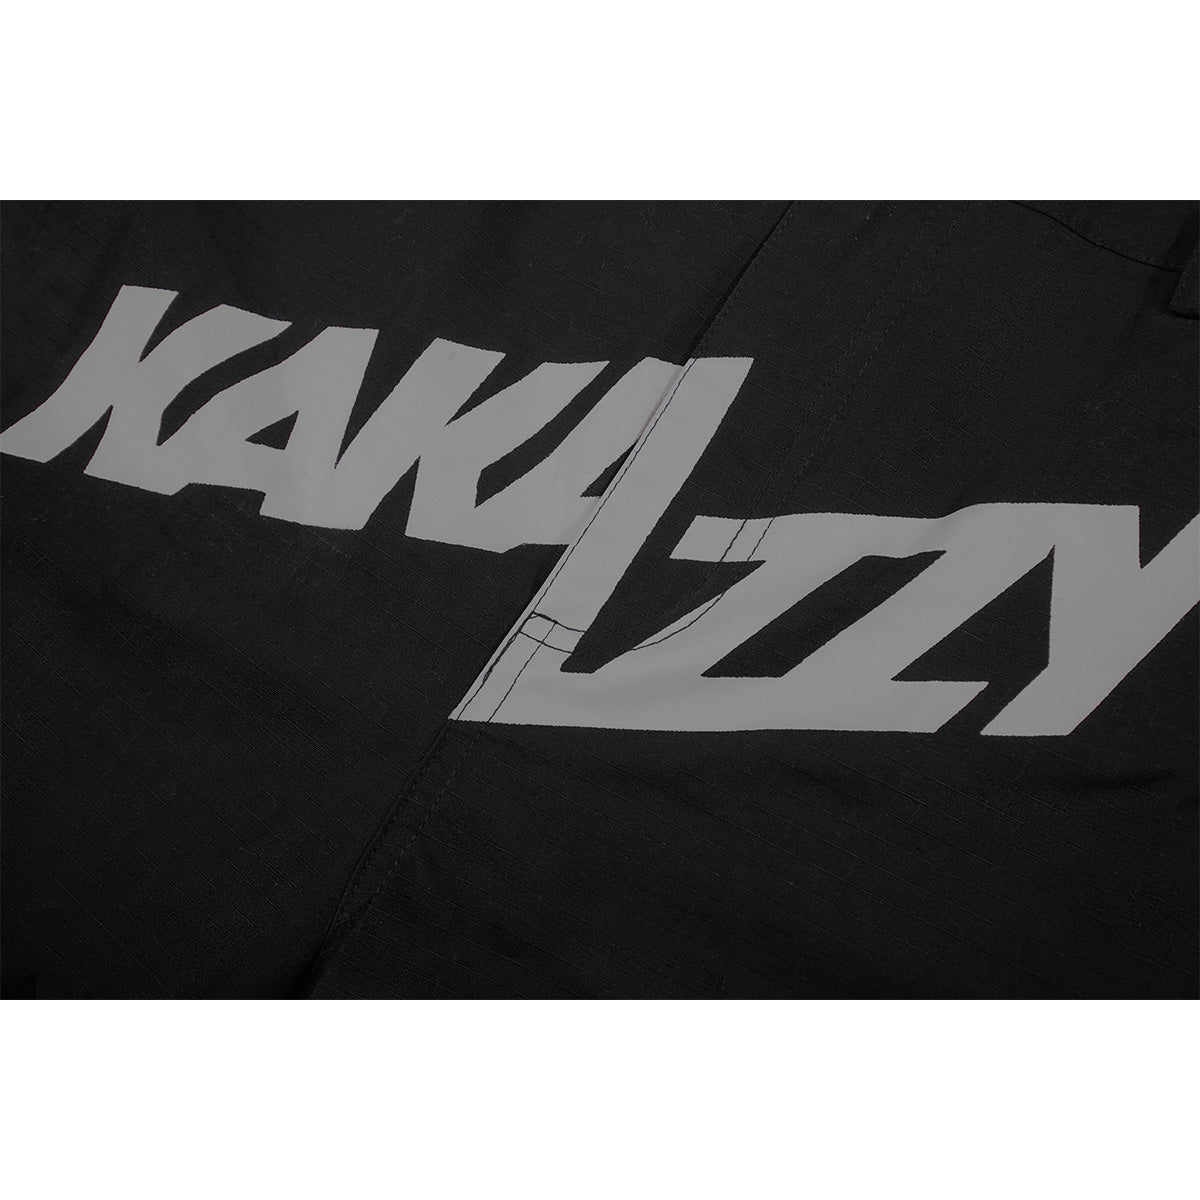 Kakazzy Cargos Black Grey